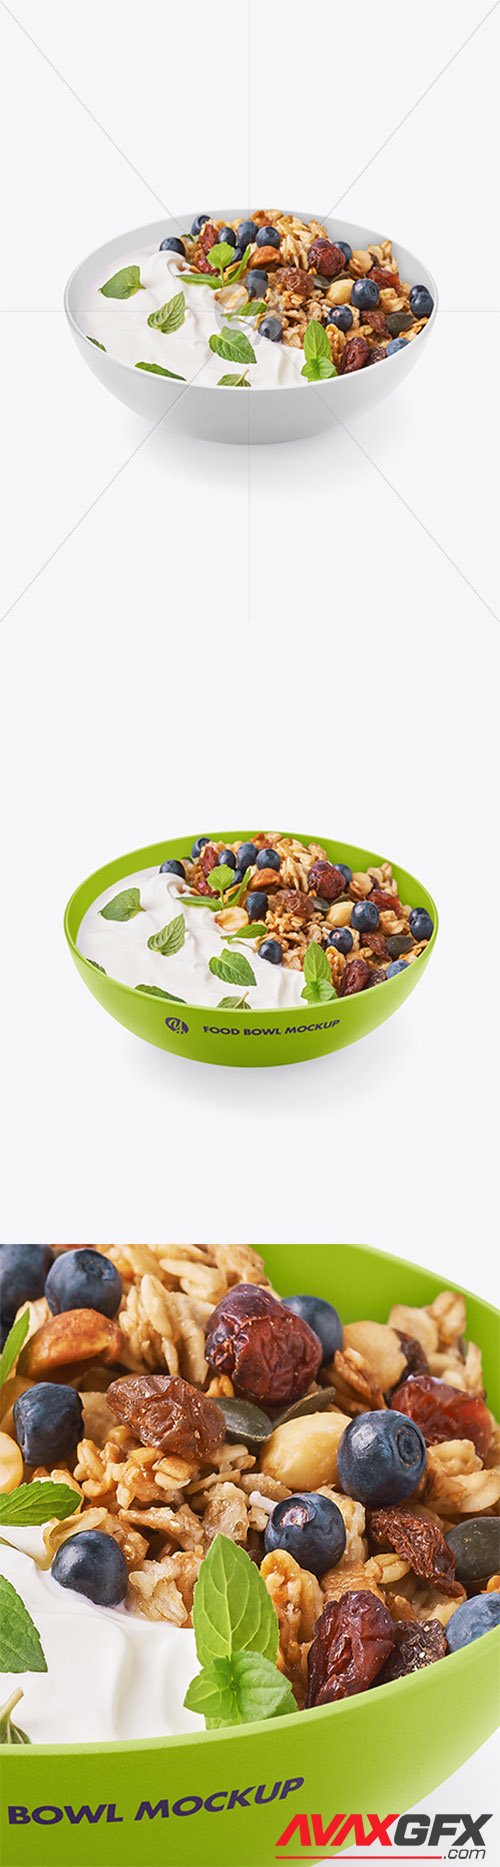 Bowl w/ Yogurt and Muesli Mockup 64512